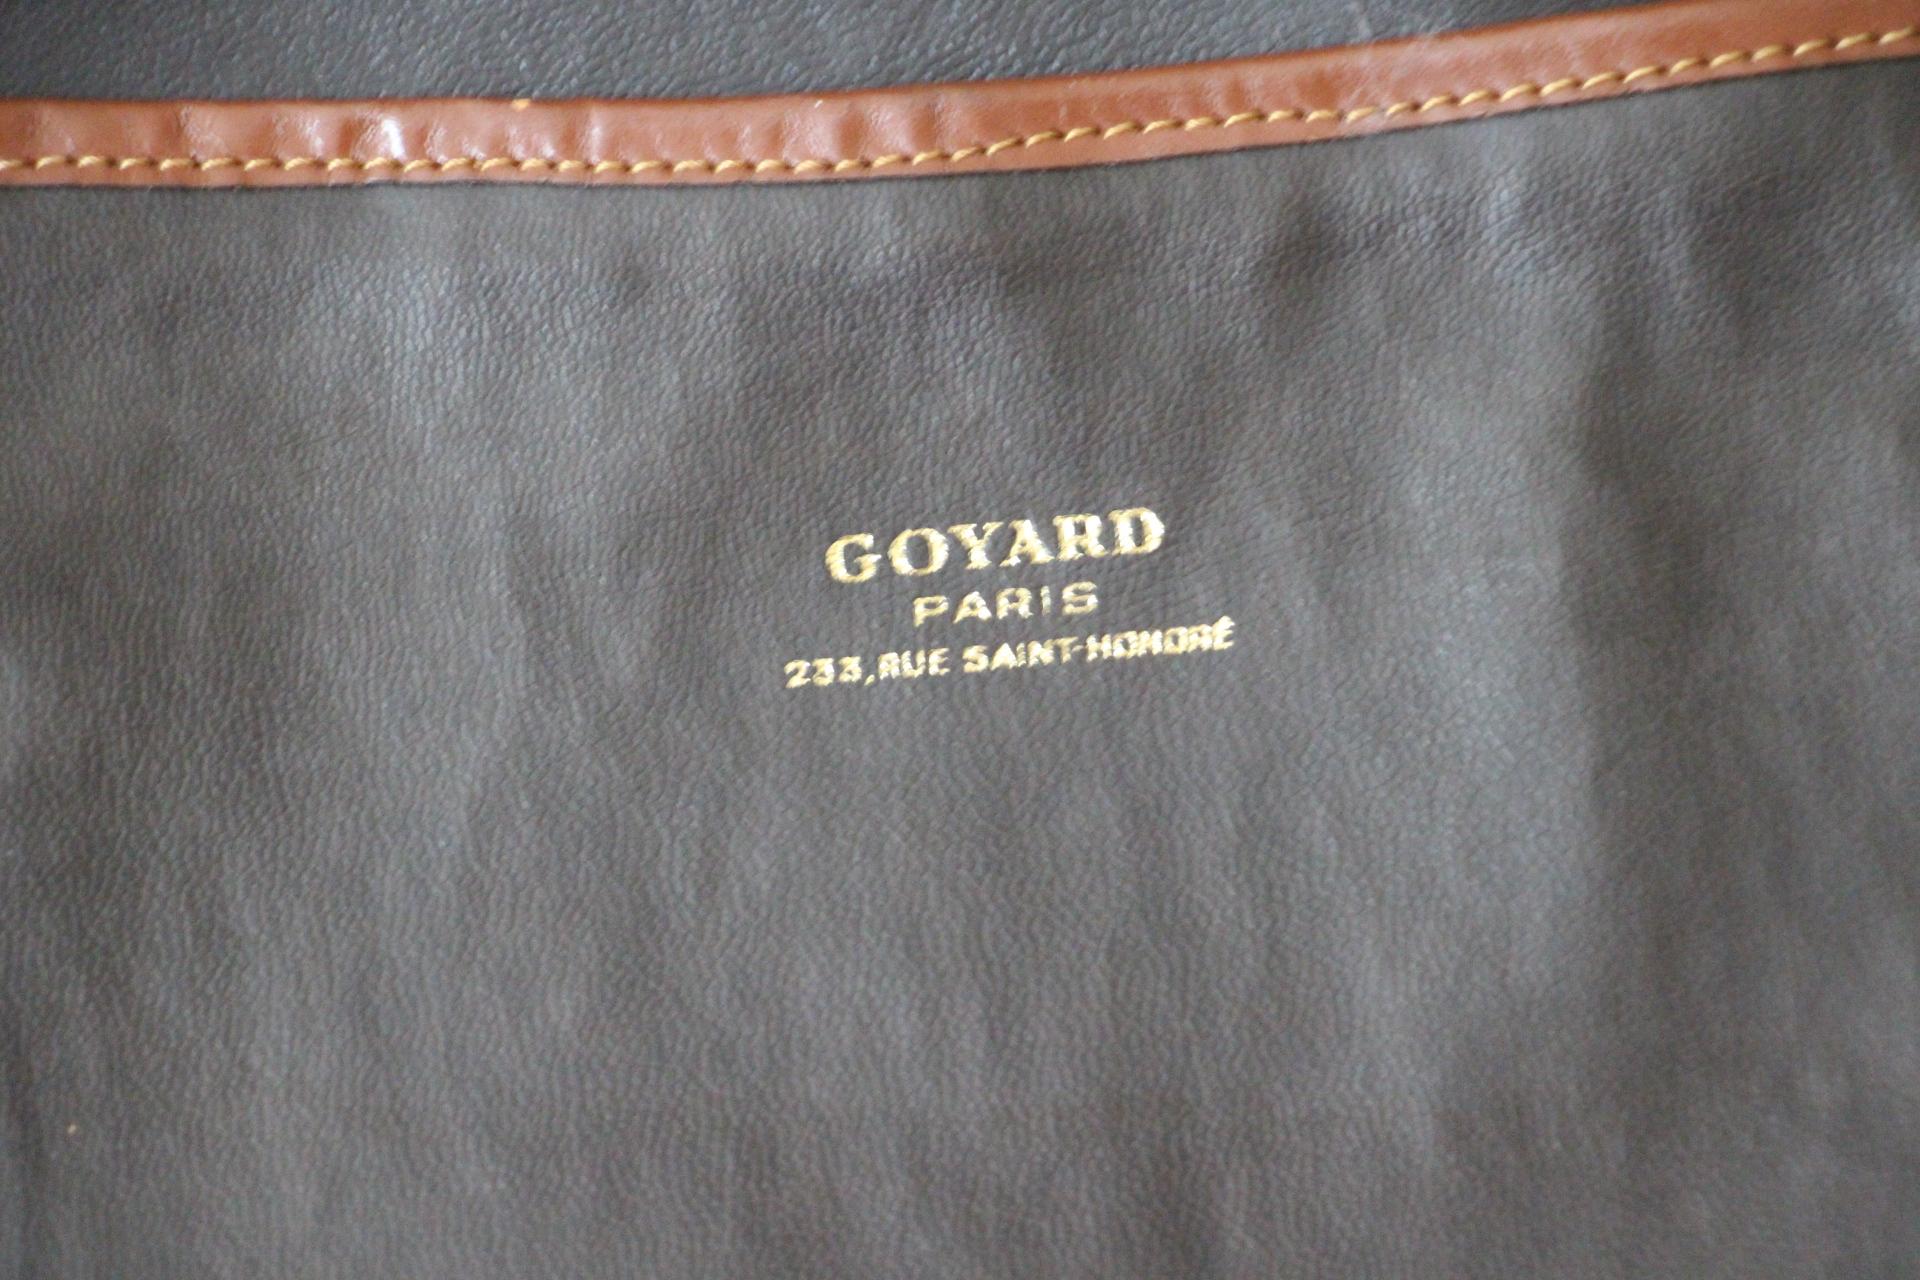 Goyard Suitcase in Woven Canvas, Goyard Steamer Trunk, Goyard Travel Bag 12